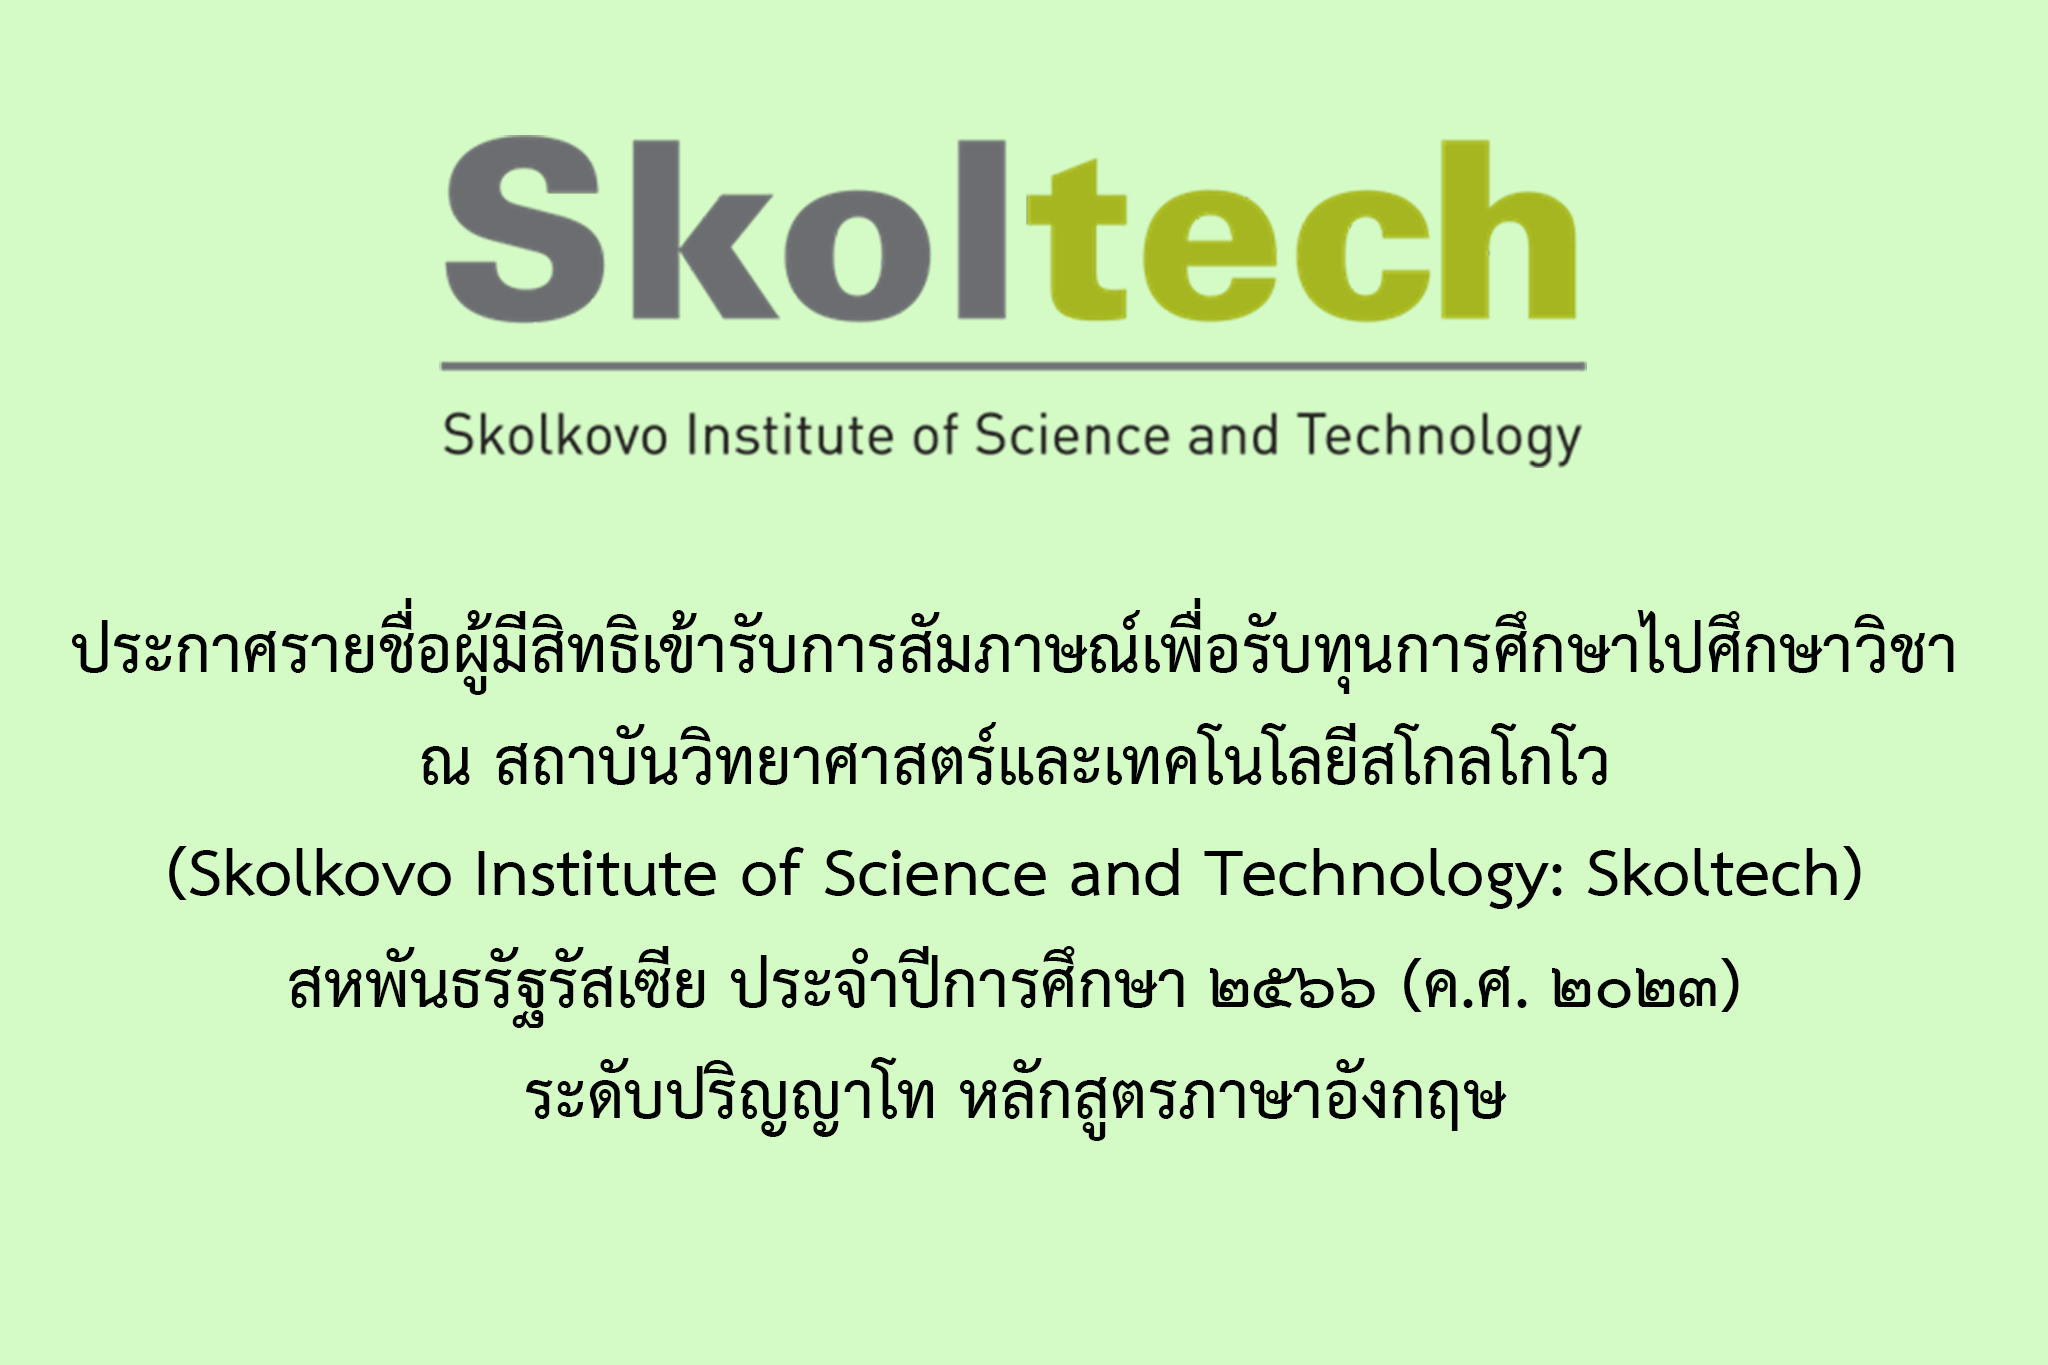 ประกาศเรื่องรายชื่อผู้มีสิทธิเข้ารับการสัมภาษณ์เพื่อรับทุนการศึกษาไปศึกษาวิชา ณ สถาบันวิทยาศาสตร์และเทคโนโลยีสโกลโกโว (Skolkovo Institute of Science and Technology: Skoltech) สหพันธรัฐรัสเซีย ประจำปีการศึกษา ๒๕๖๖ (ค.ศ. ๒๐๒๓) ระดับปริญญาโท หลักสูตรภาษาอังก